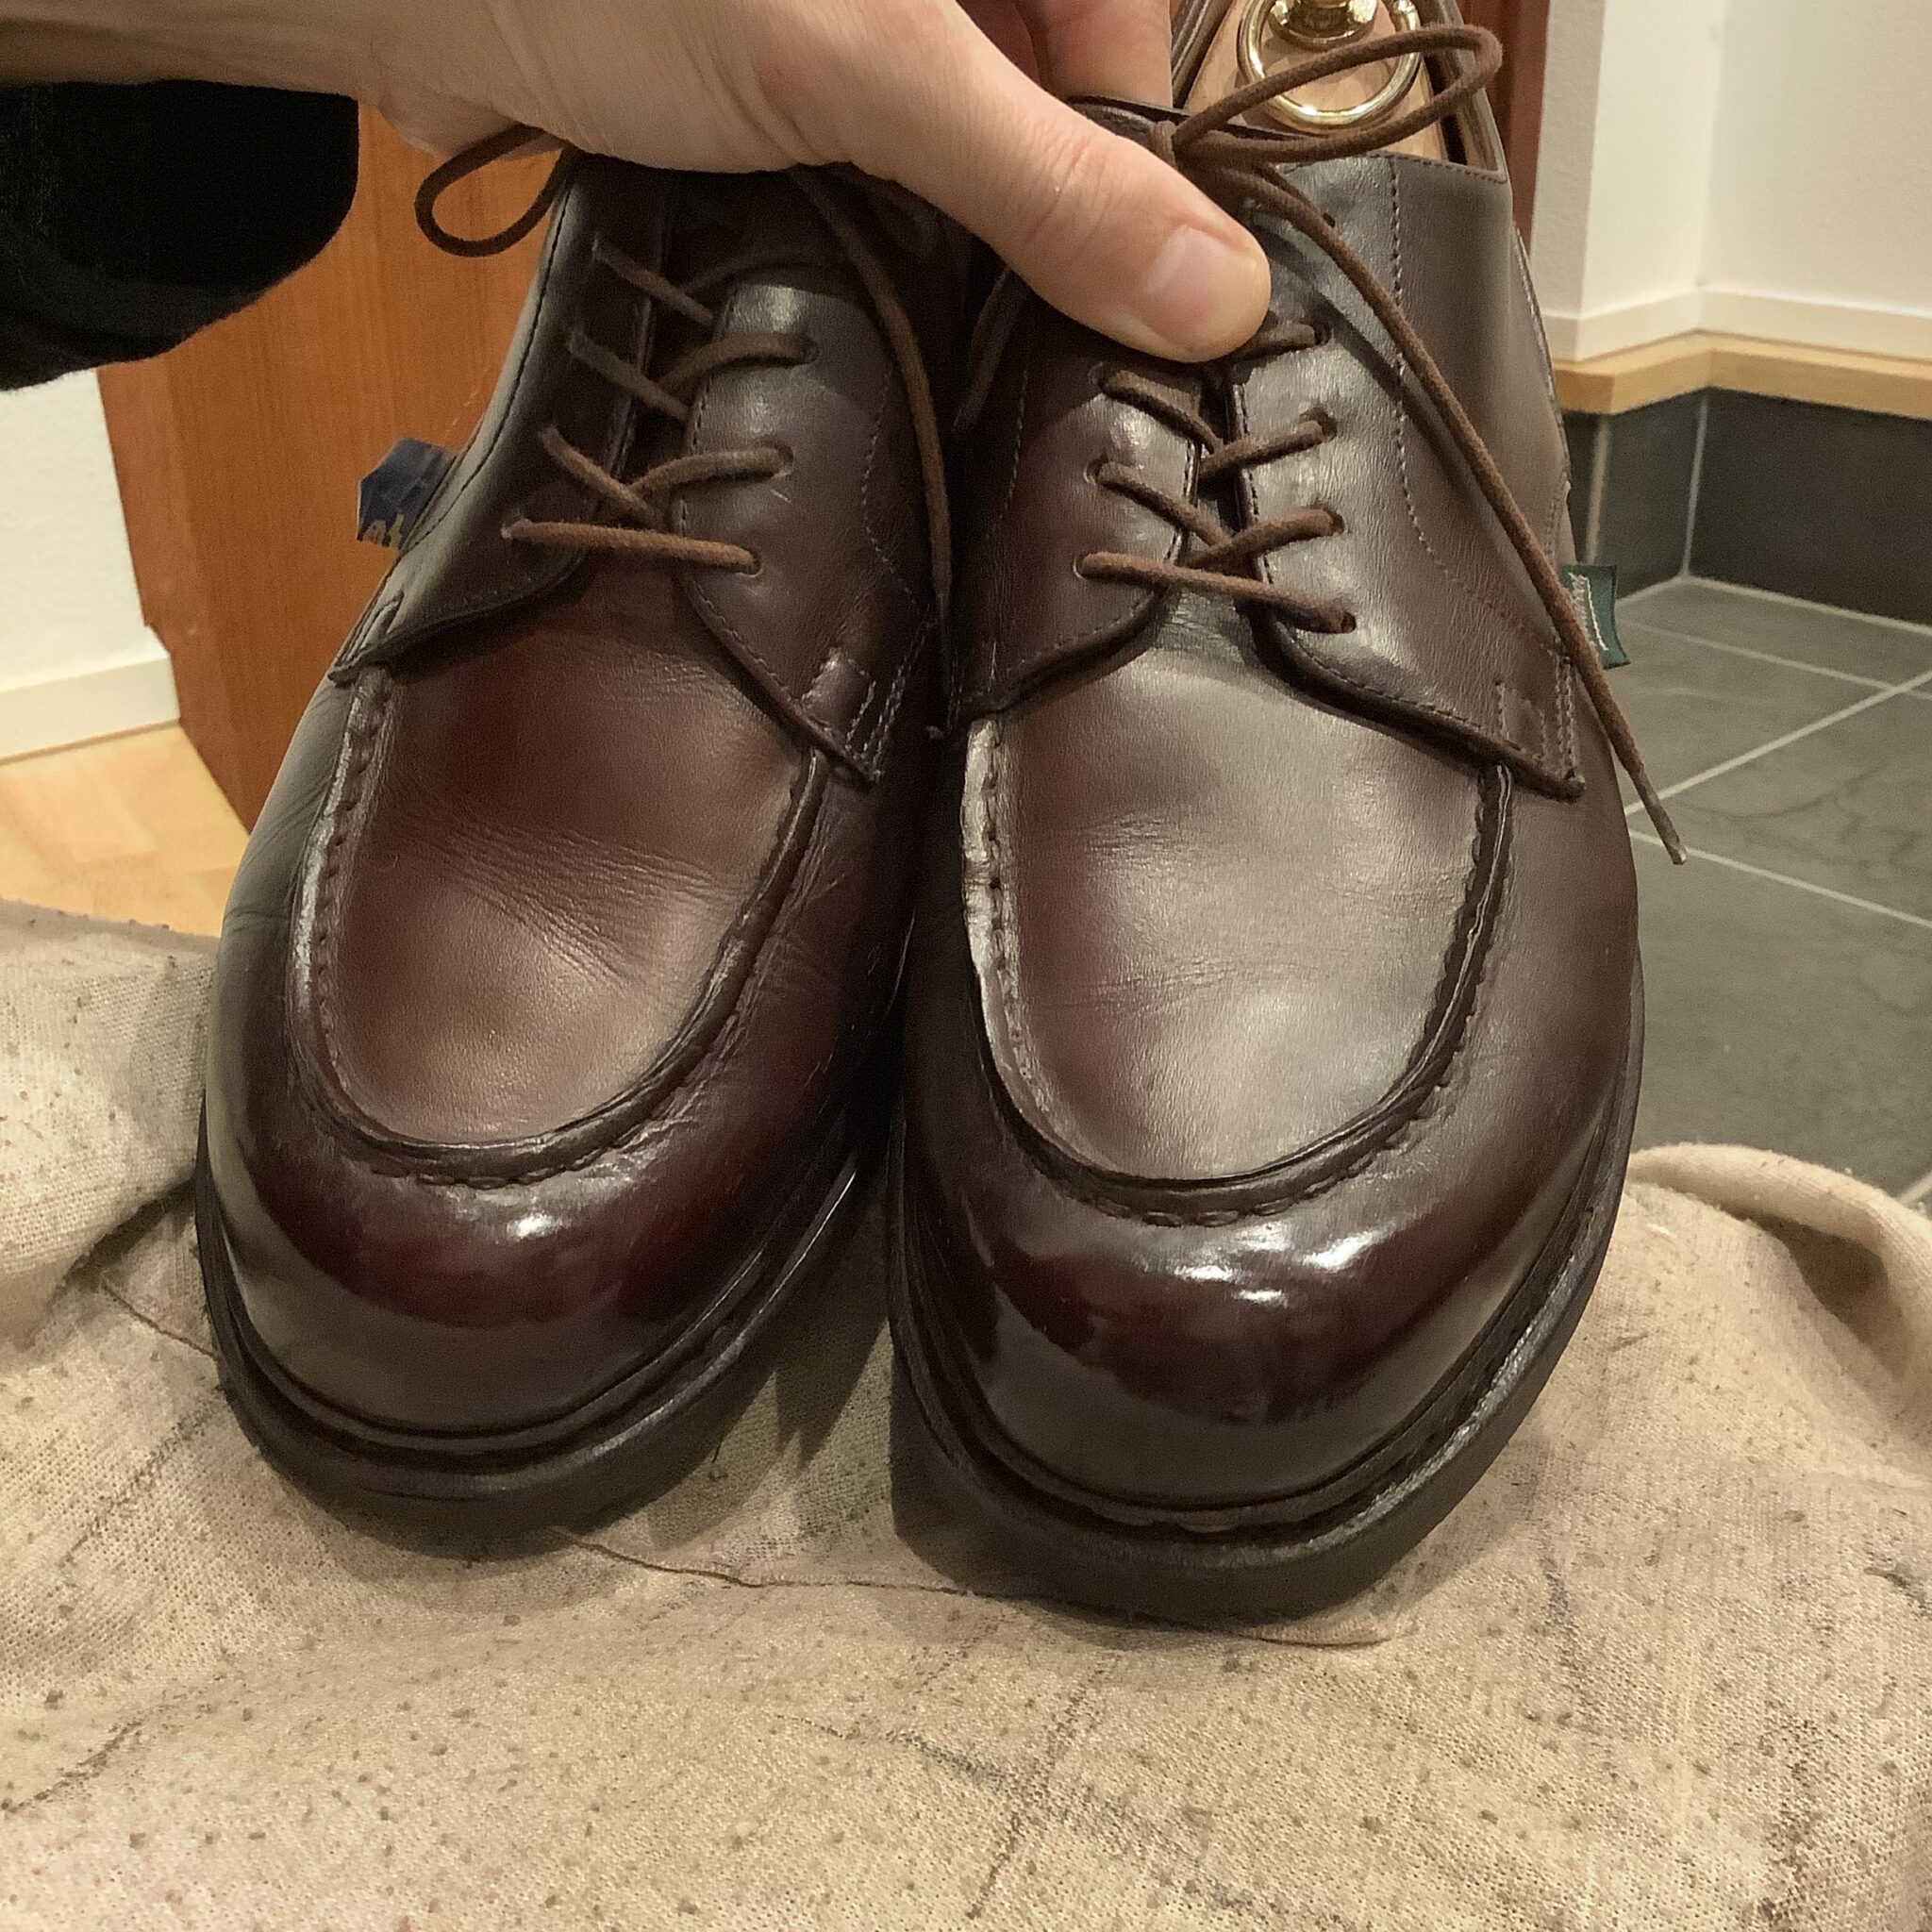 Paraboot（パラブーツ）シャンボードの靴磨き 具体的な手順を靴磨きセットと共に解説します | 明日ぴかブログ